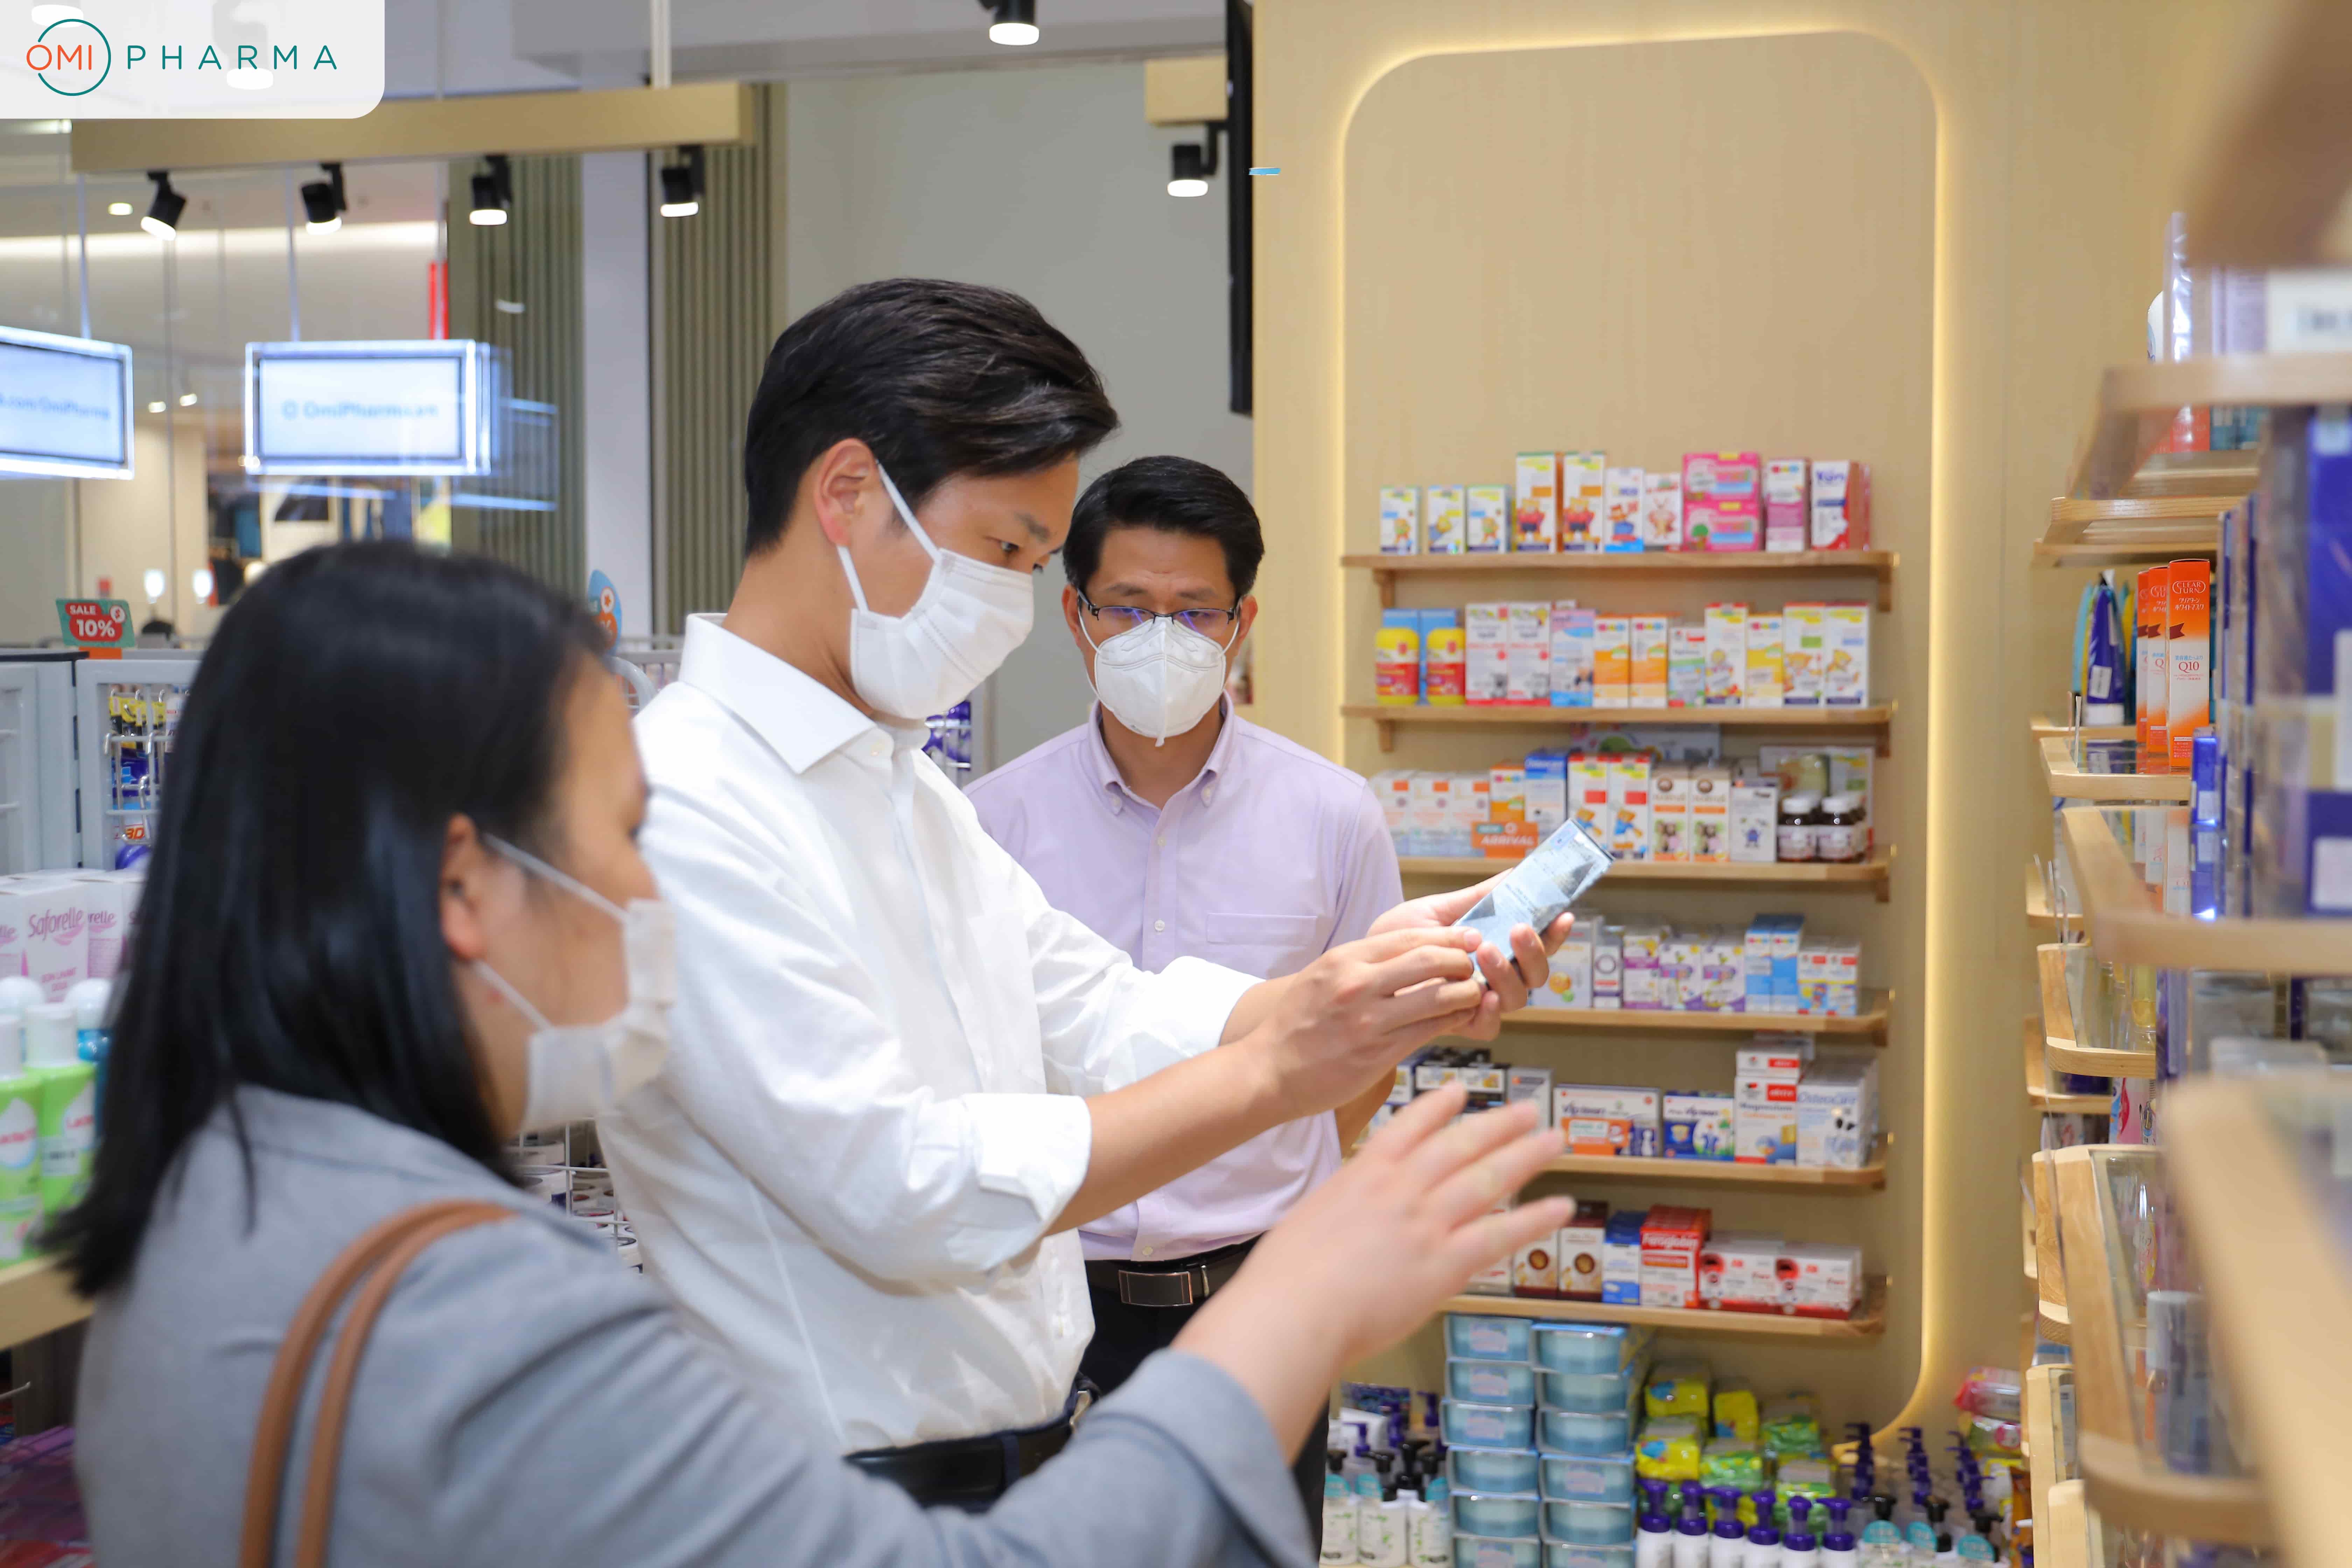 Tổng Giám đốc Sugi Holdings Nhật Bản ghé thăm hệ thống nhà thuốc tiêu chuẩn Nhật Bản Omi Pharma  